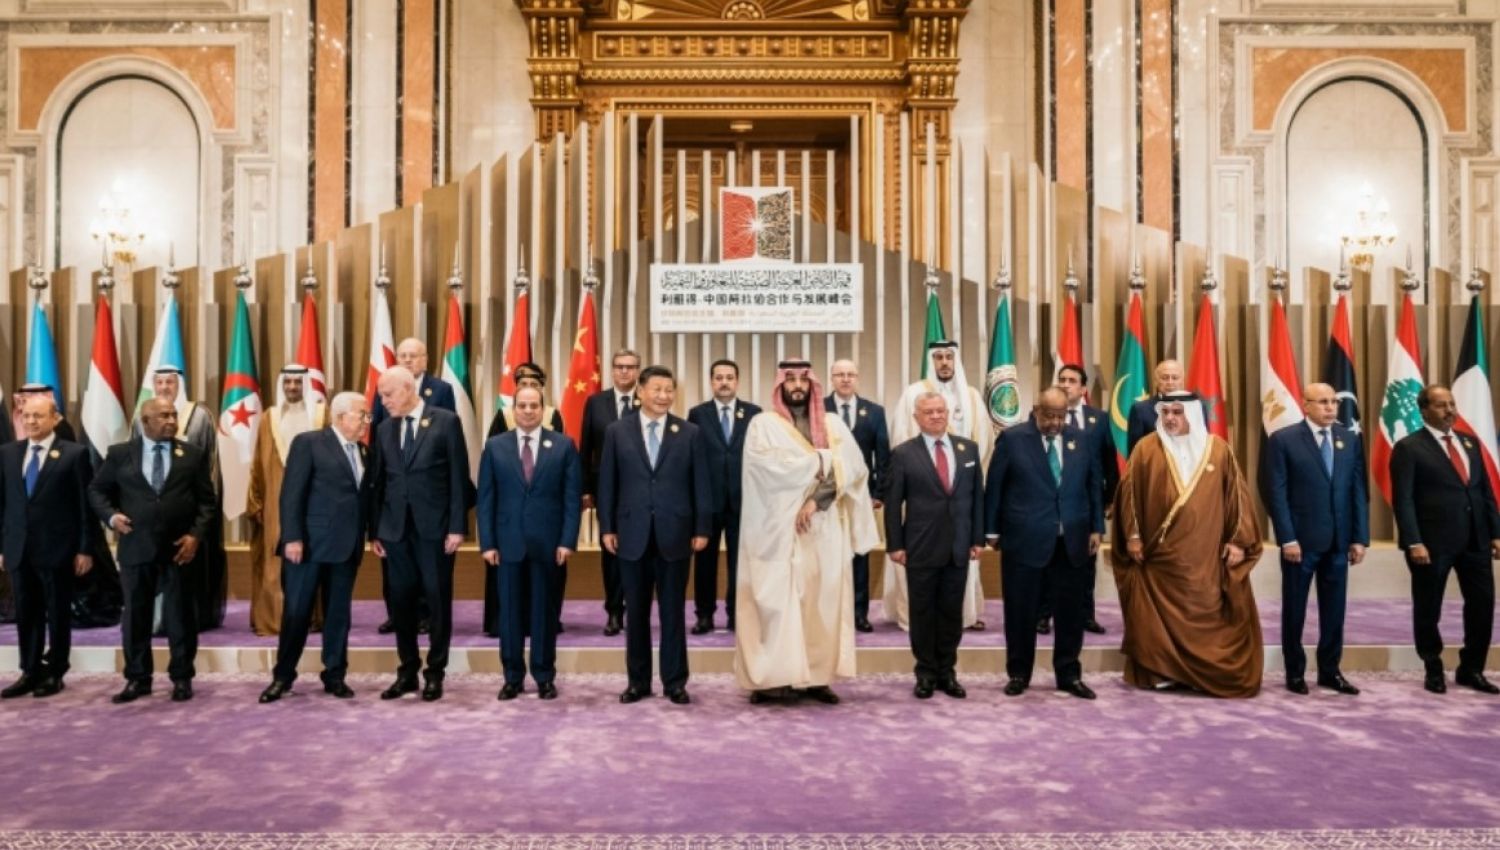 ما هي استراتيجيات دول الخليج في التعامل مع الصين؟